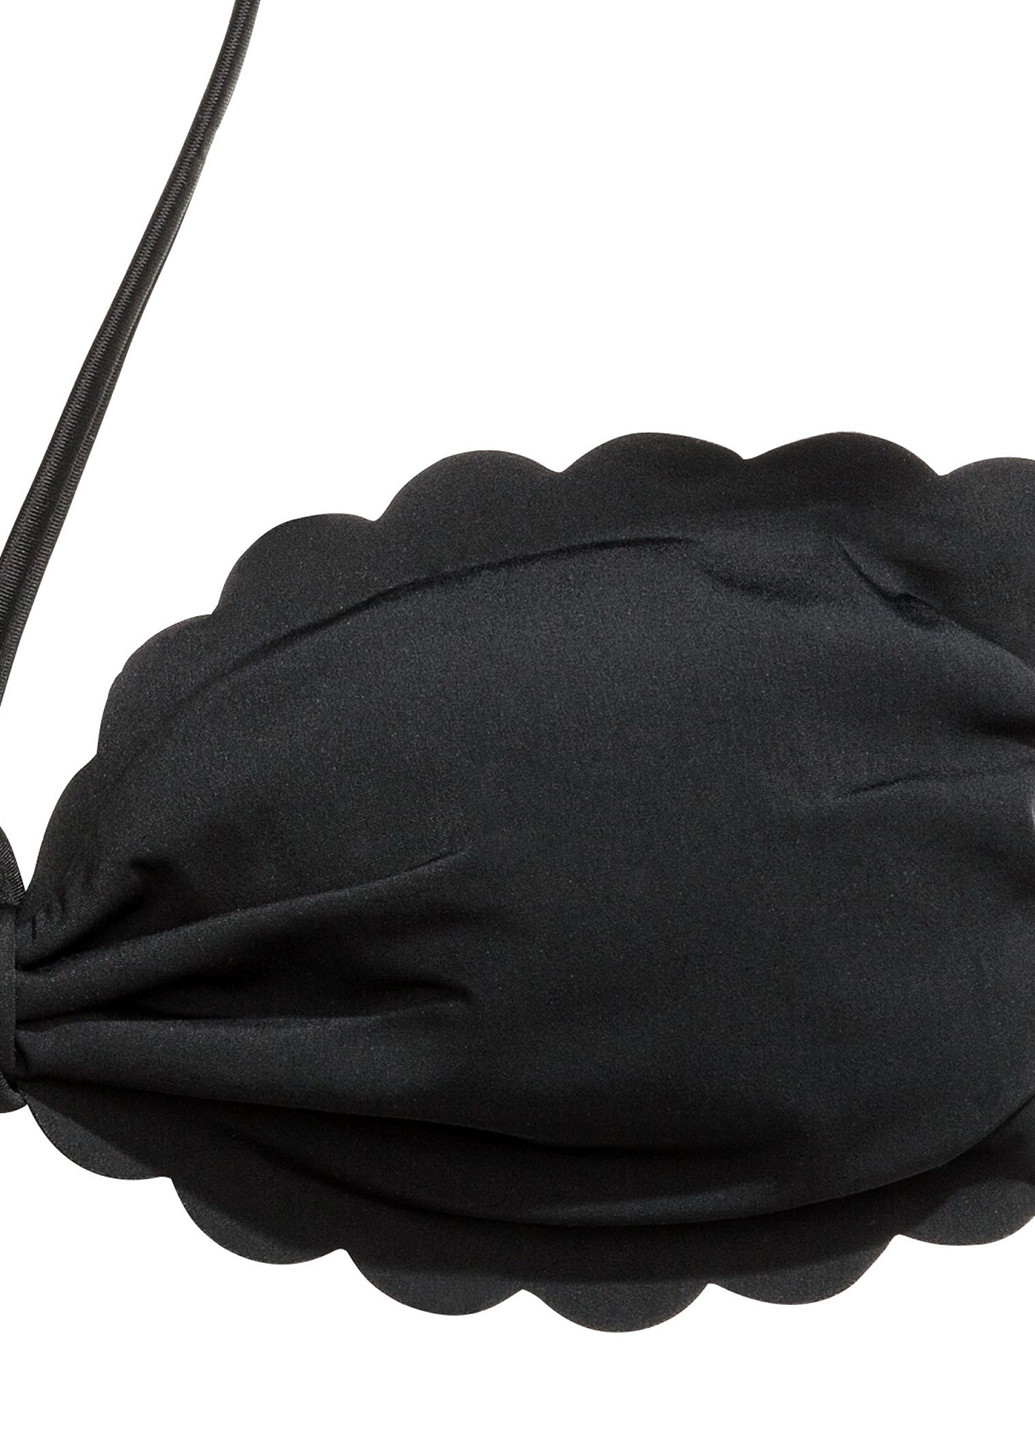 Купальный лиф H&M бикини, бандо однотонный чёрный пляжный полиамид, трикотаж